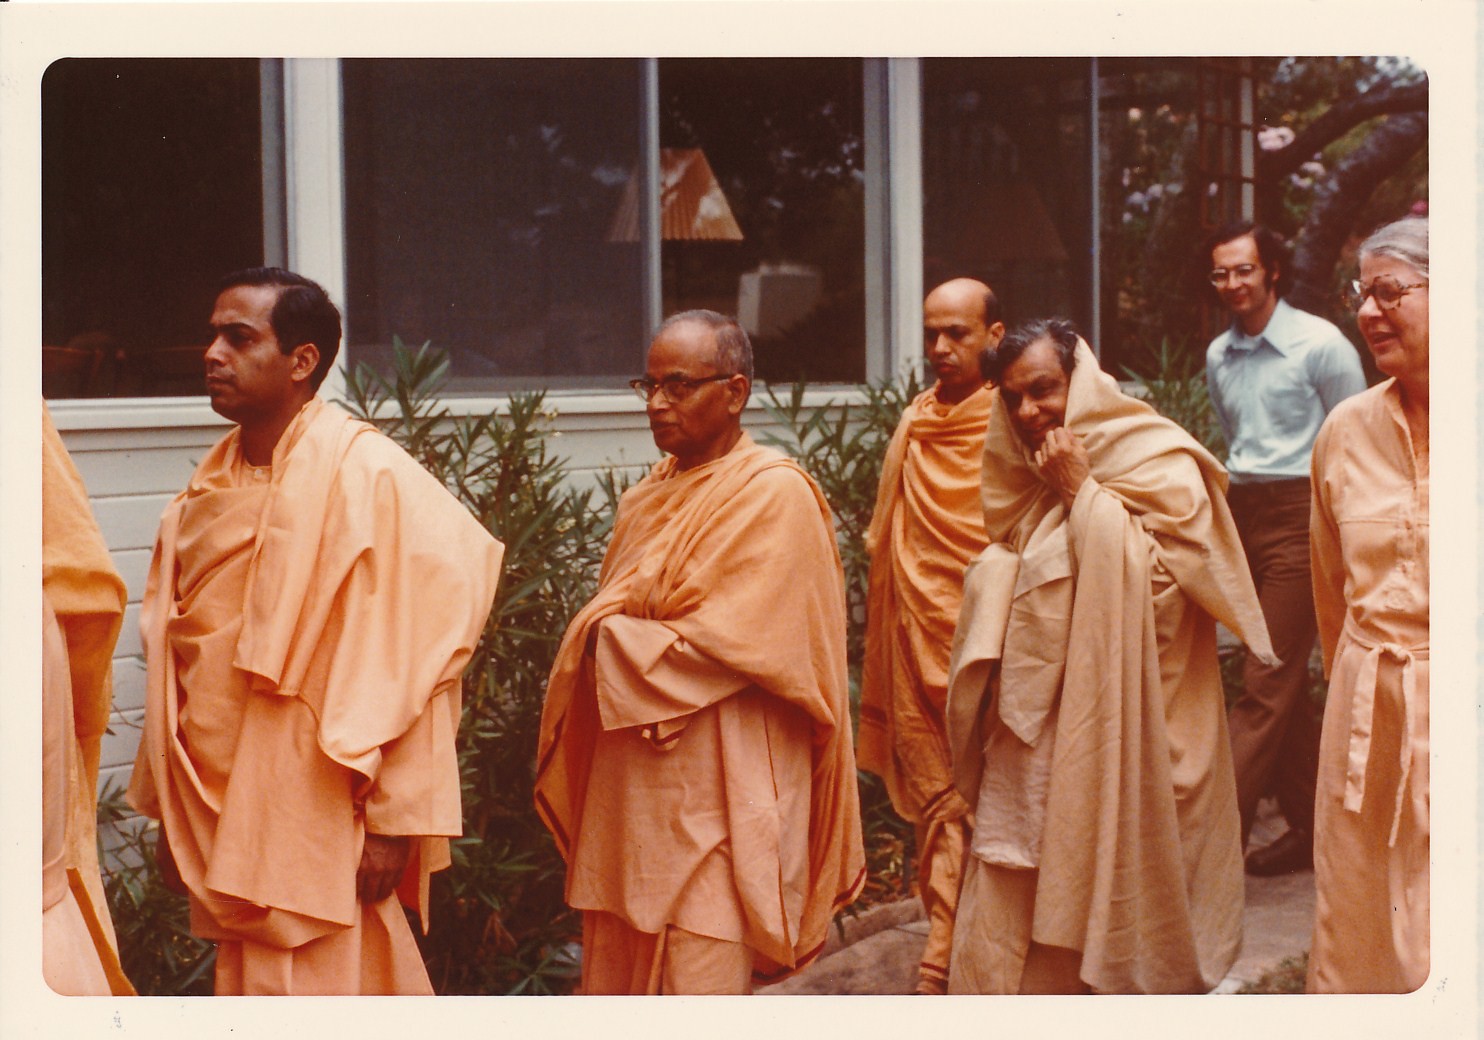 Santa Barbara Swami Bhaskarananda Swami Shraddhananda Swami Prabuddhananda Swami Aseshananda